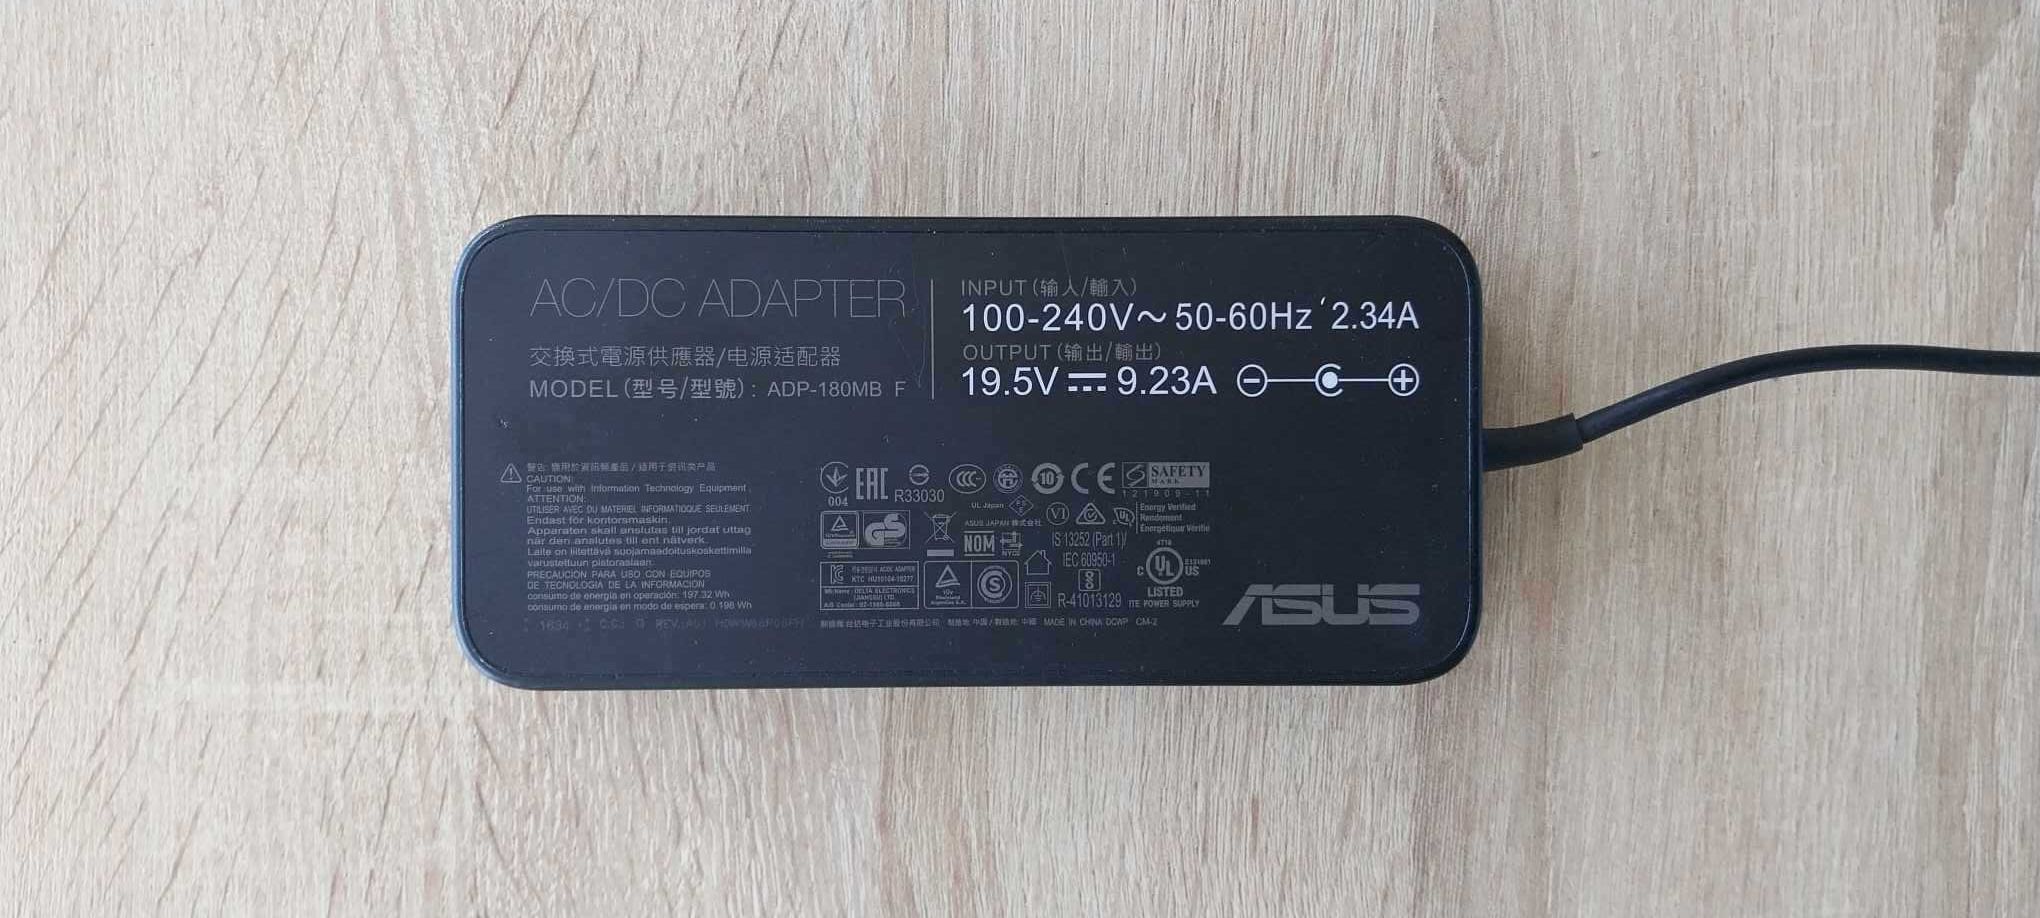 Asus ROG Strix GL502VM i7 7700HQ / GTX 1060 6GB / 16gb Ram / SSD 256gb